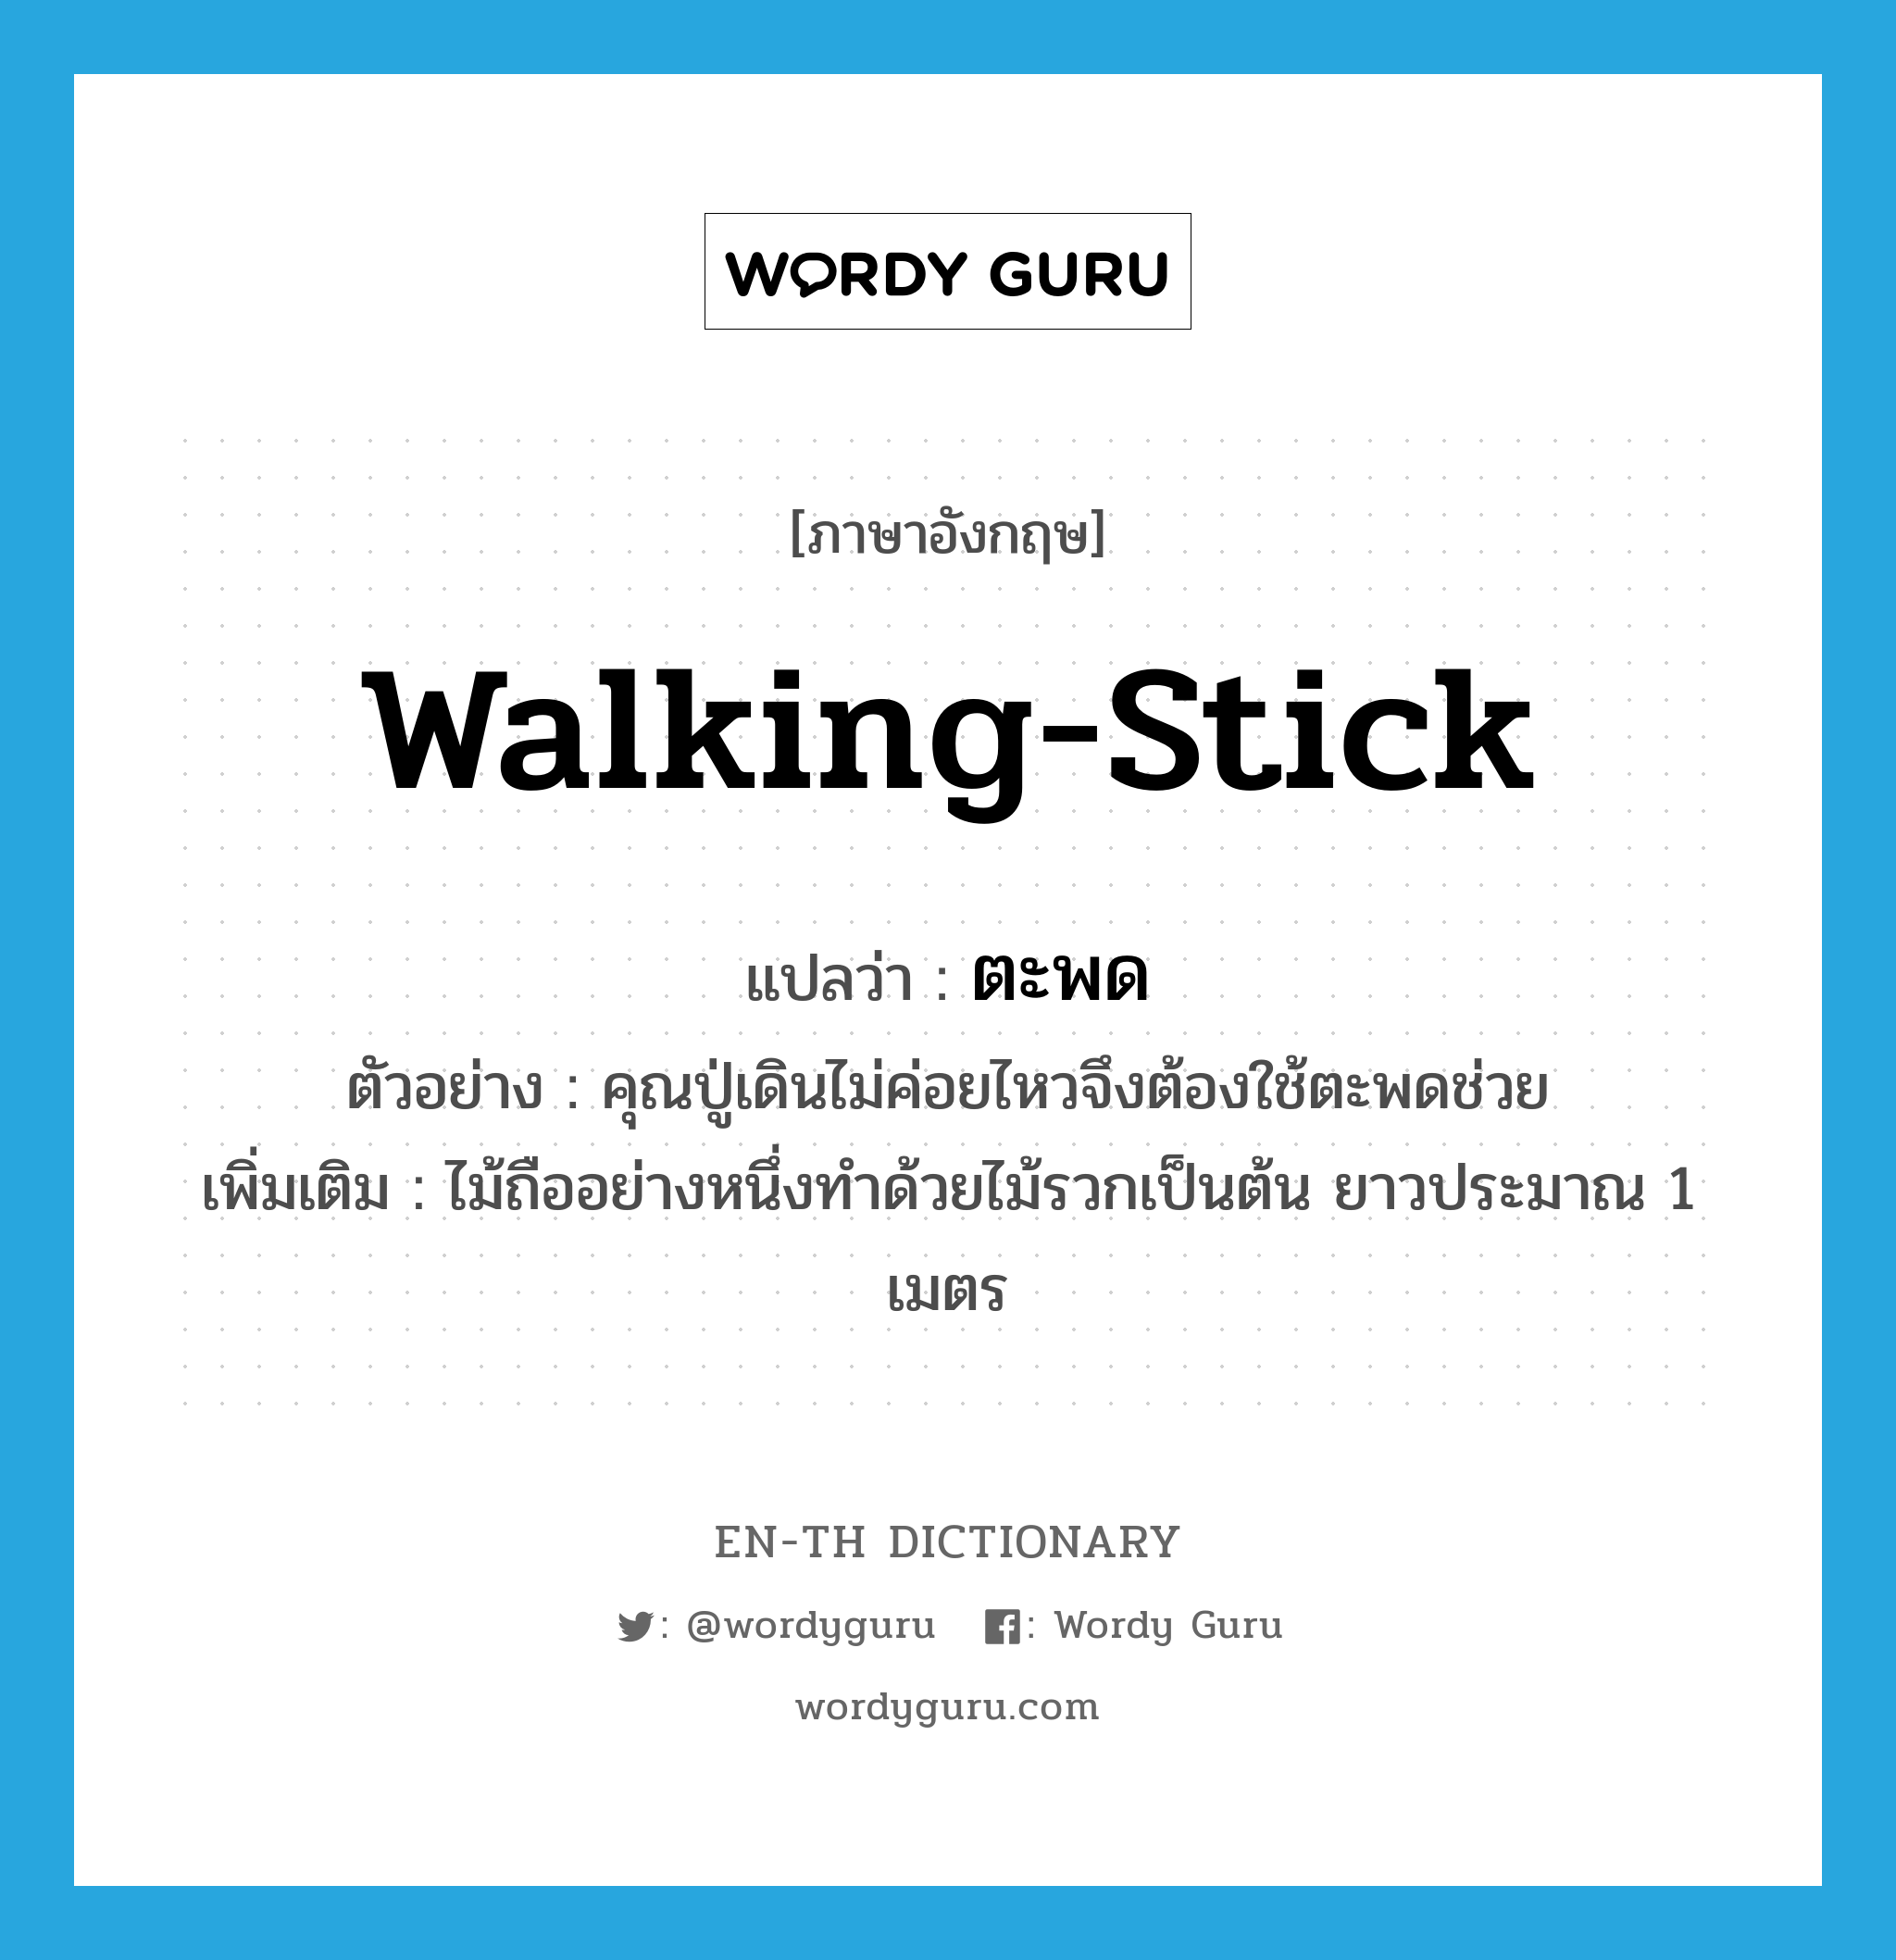 walking stick แปลว่า?, คำศัพท์ภาษาอังกฤษ walking-stick แปลว่า ตะพด ประเภท N ตัวอย่าง คุณปู่เดินไม่ค่อยไหวจึงต้องใช้ตะพดช่วย เพิ่มเติม ไม้ถืออย่างหนึ่งทำด้วยไม้รวกเป็นต้น ยาวประมาณ 1 เมตร หมวด N